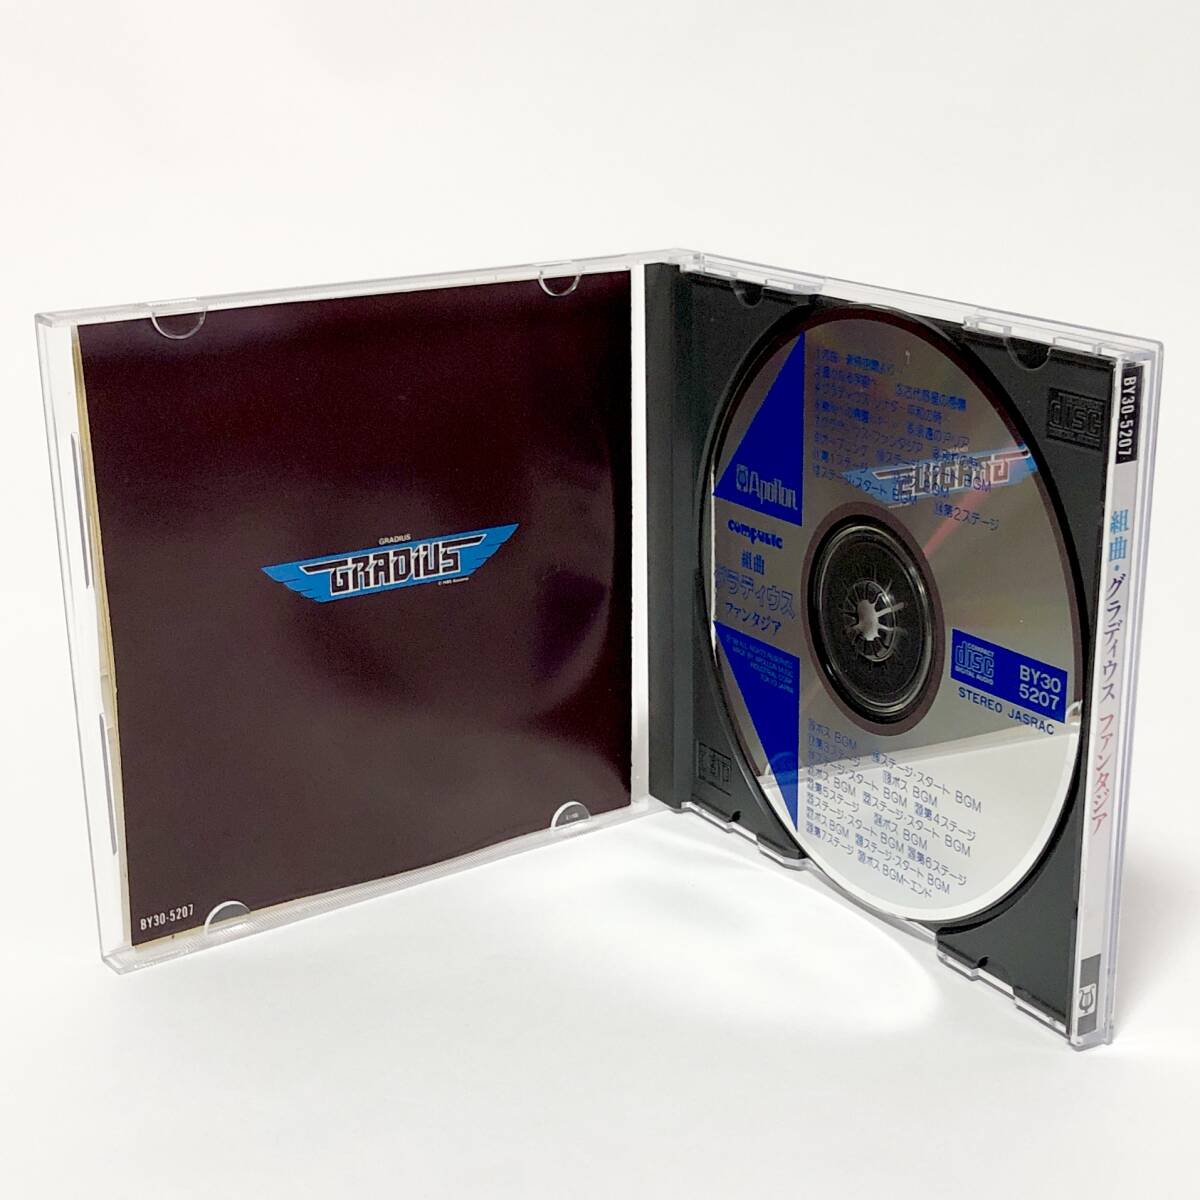 組曲 グラディウス ファンタジア 帯付き ステッカー付き 痛みあり ゲーム音楽CD コナミ Suite Gradius Fantasia VGM CD Konamiの画像4